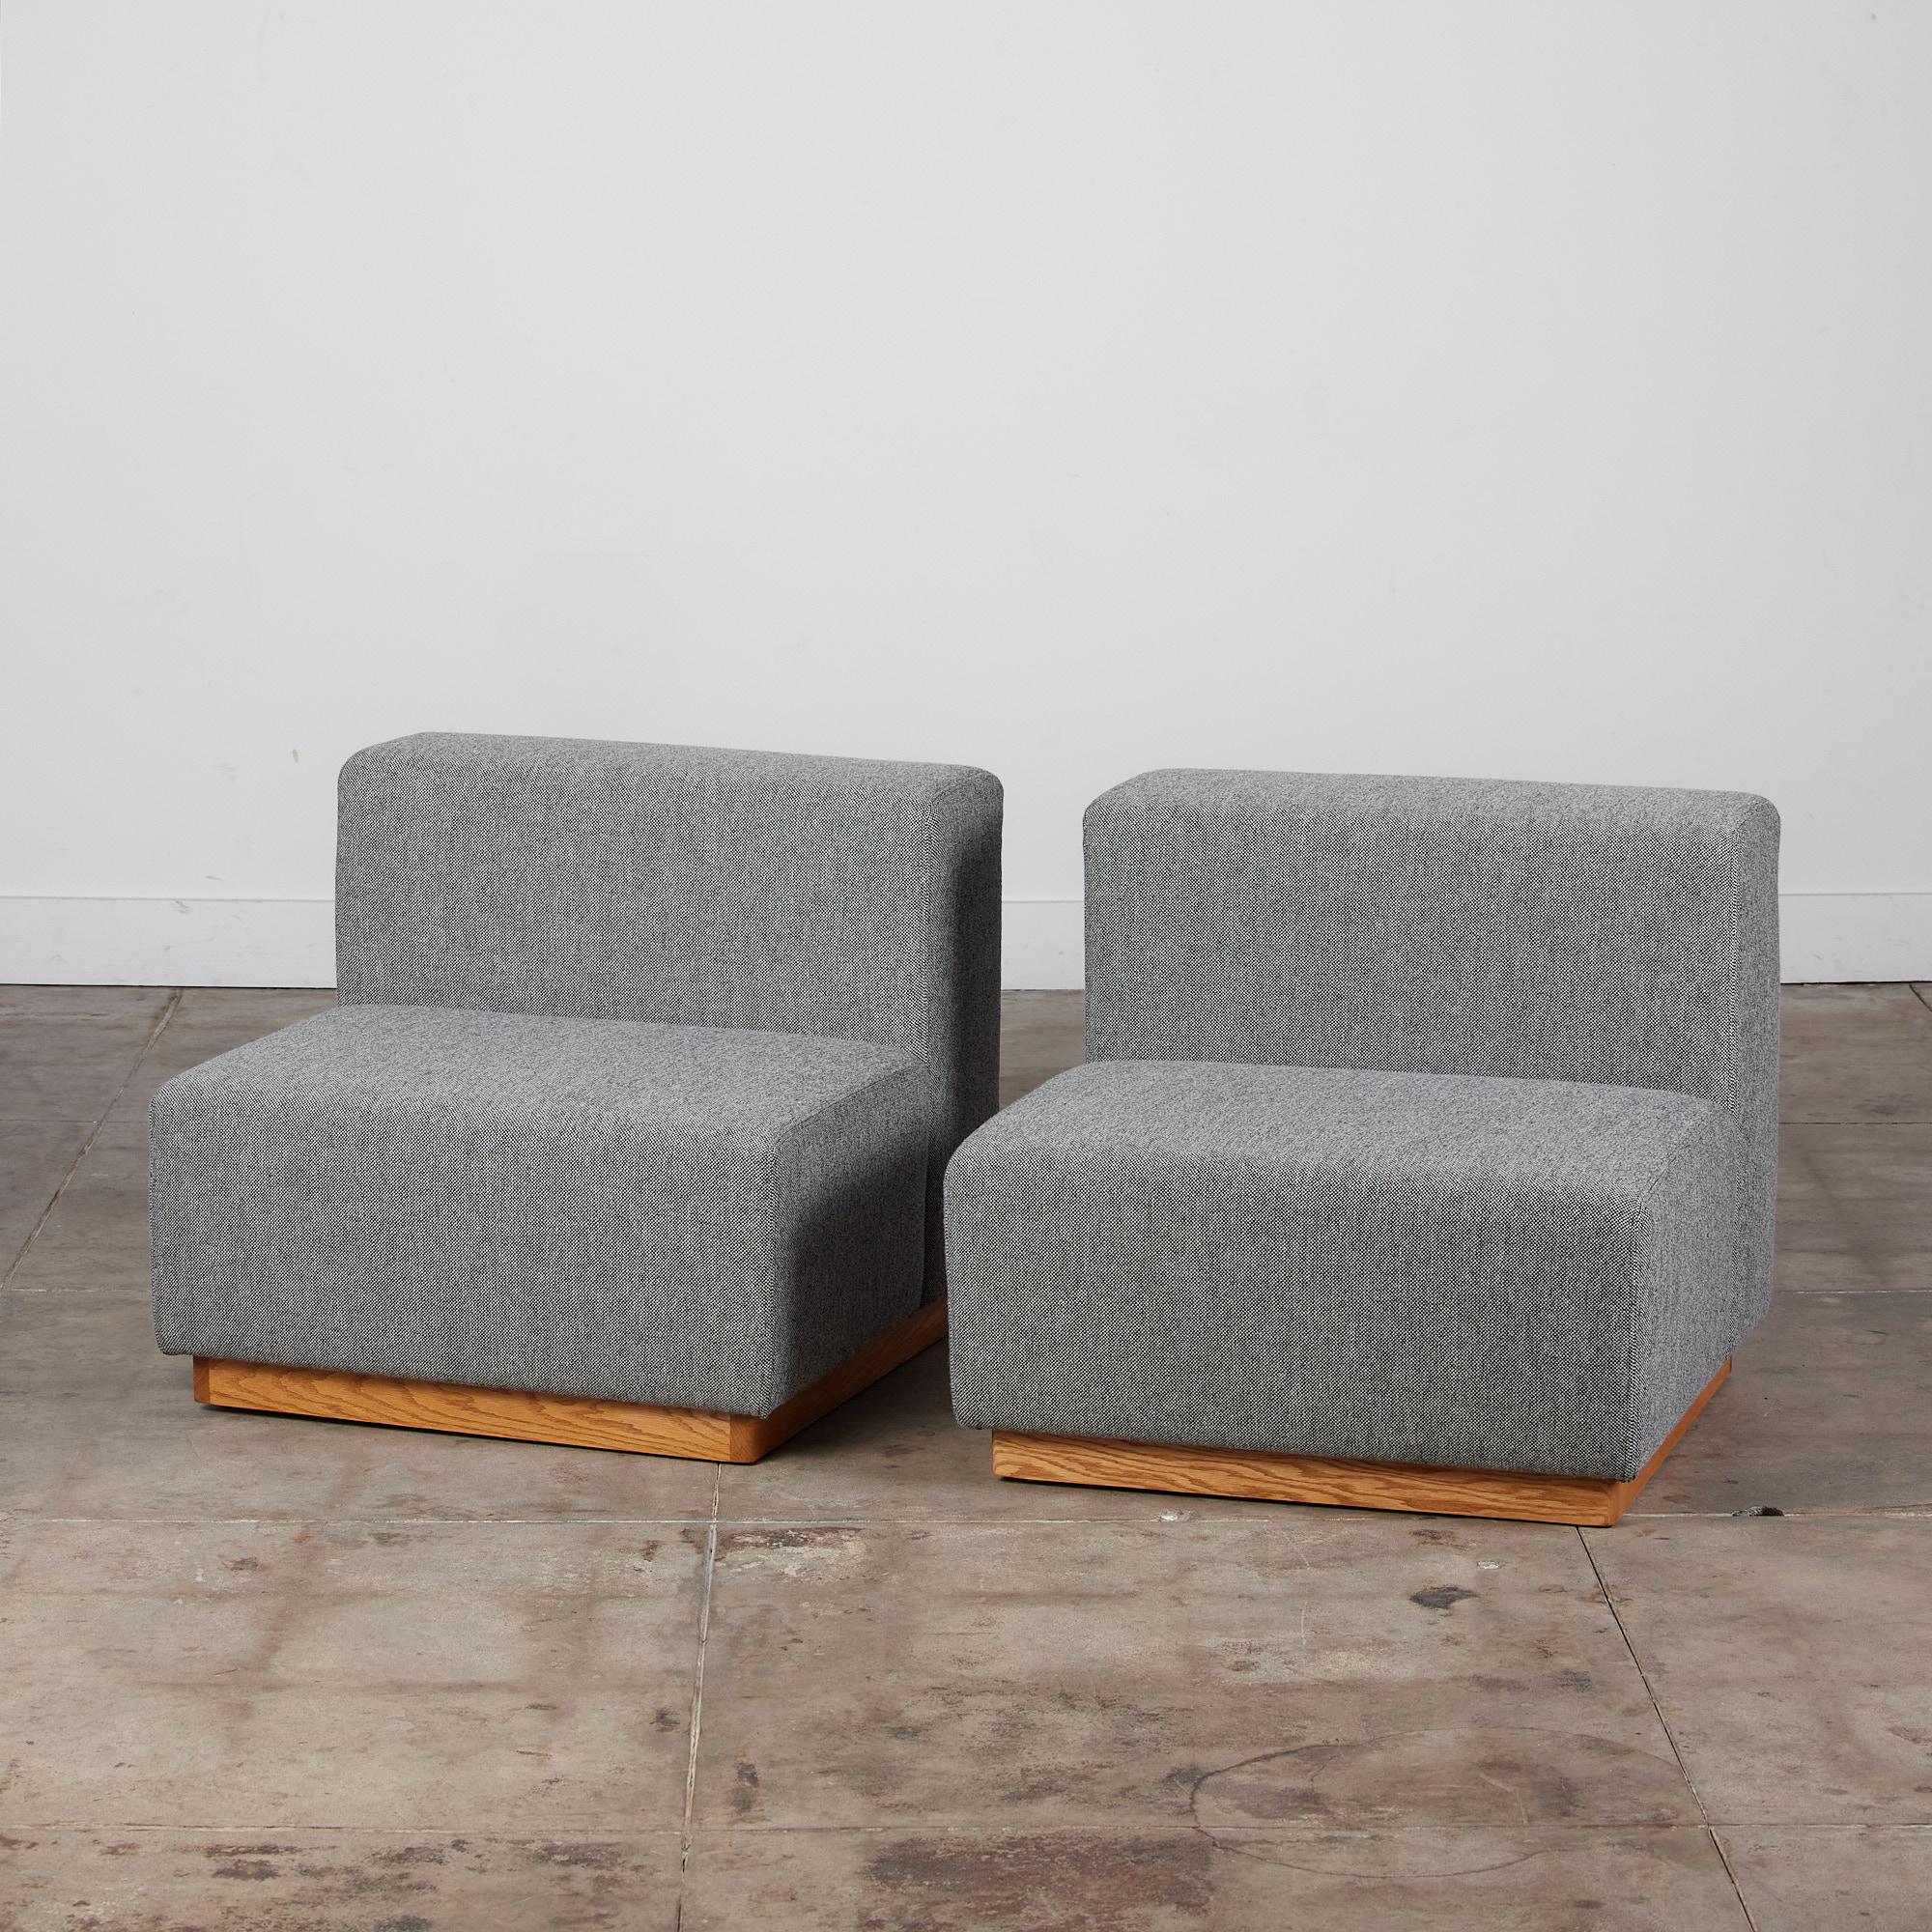 Ein Paar moderne kubische Sofas im Stil von Giancarlo Piretti. Diese Sitze wurden neu mit Kvadrat-Stoff bezogen und bestehen aus zwei modularen Sitzen mit klaren geometrischen Linien. Die Sitze stehen auf einem Sockel aus Eichenholz. Diese